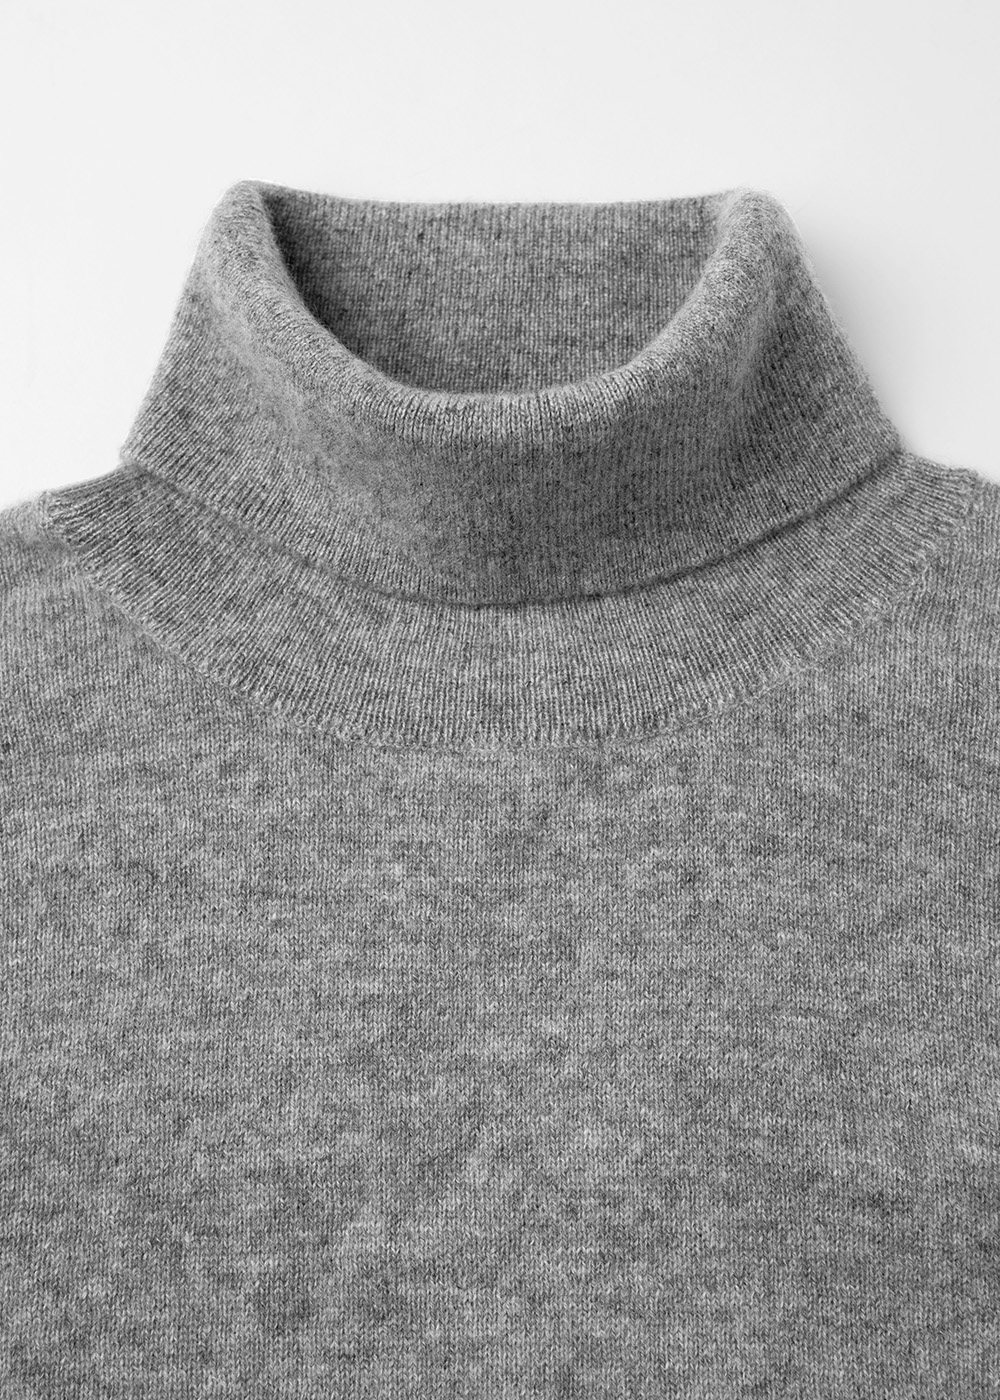 Cashmere 10% Blended Turtleneck Knit _ gray